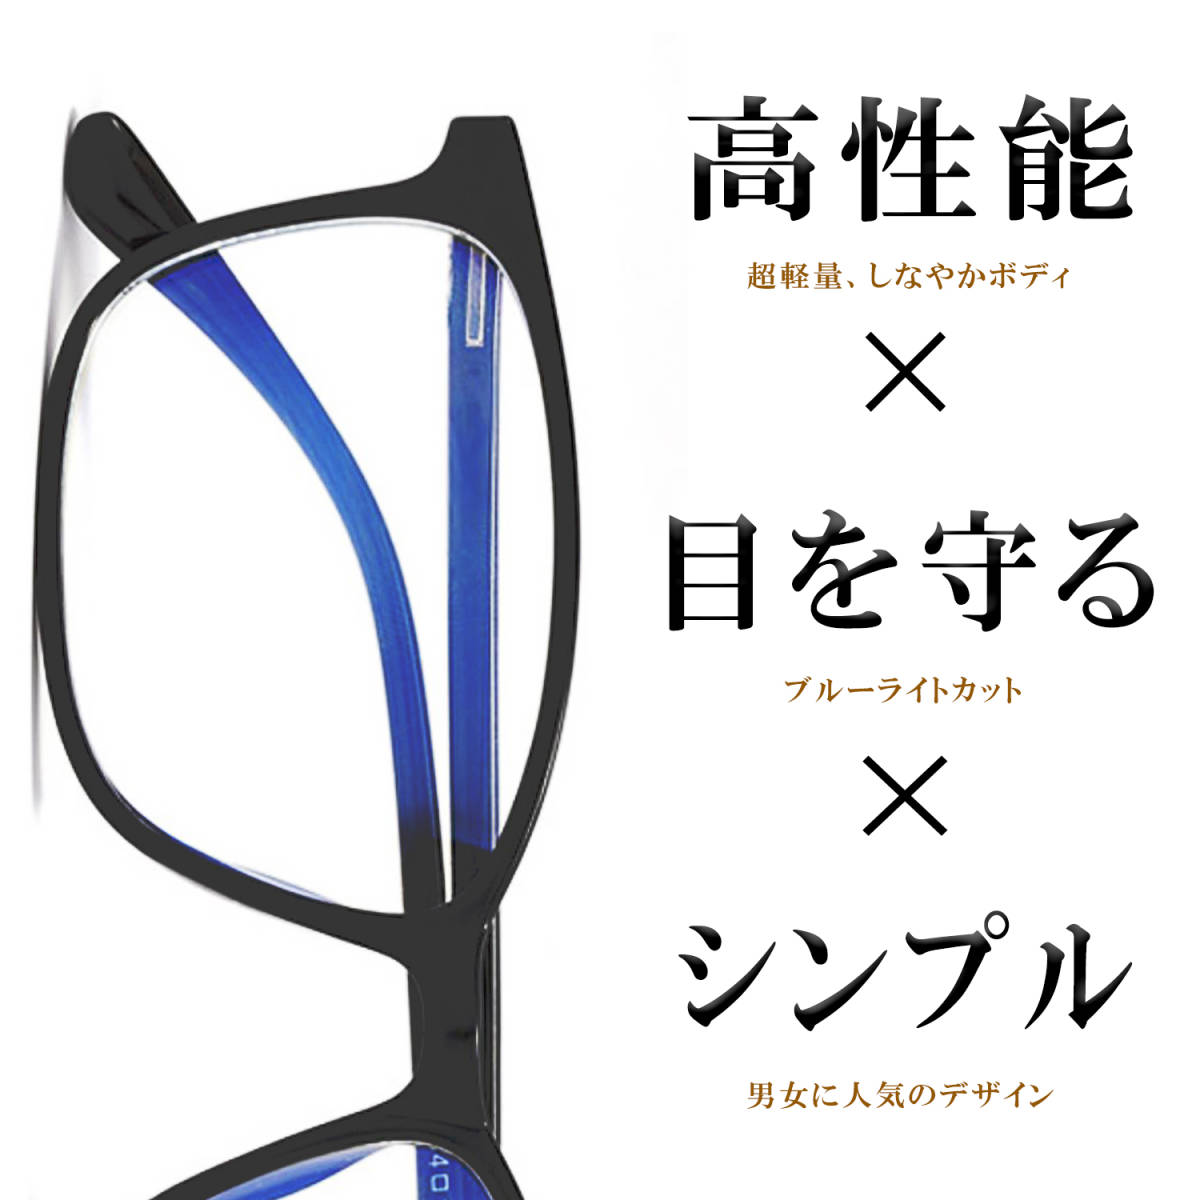 全日本送料無料 ブルーライトカット メガネ 超軽量 18グラム 伊達眼鏡 度なし シンプル